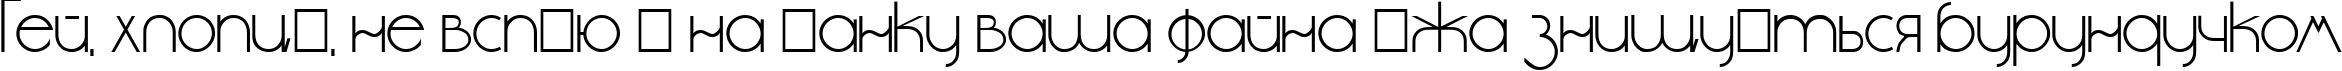 Пример написания шрифтом DS StandartCyr текста на украинском